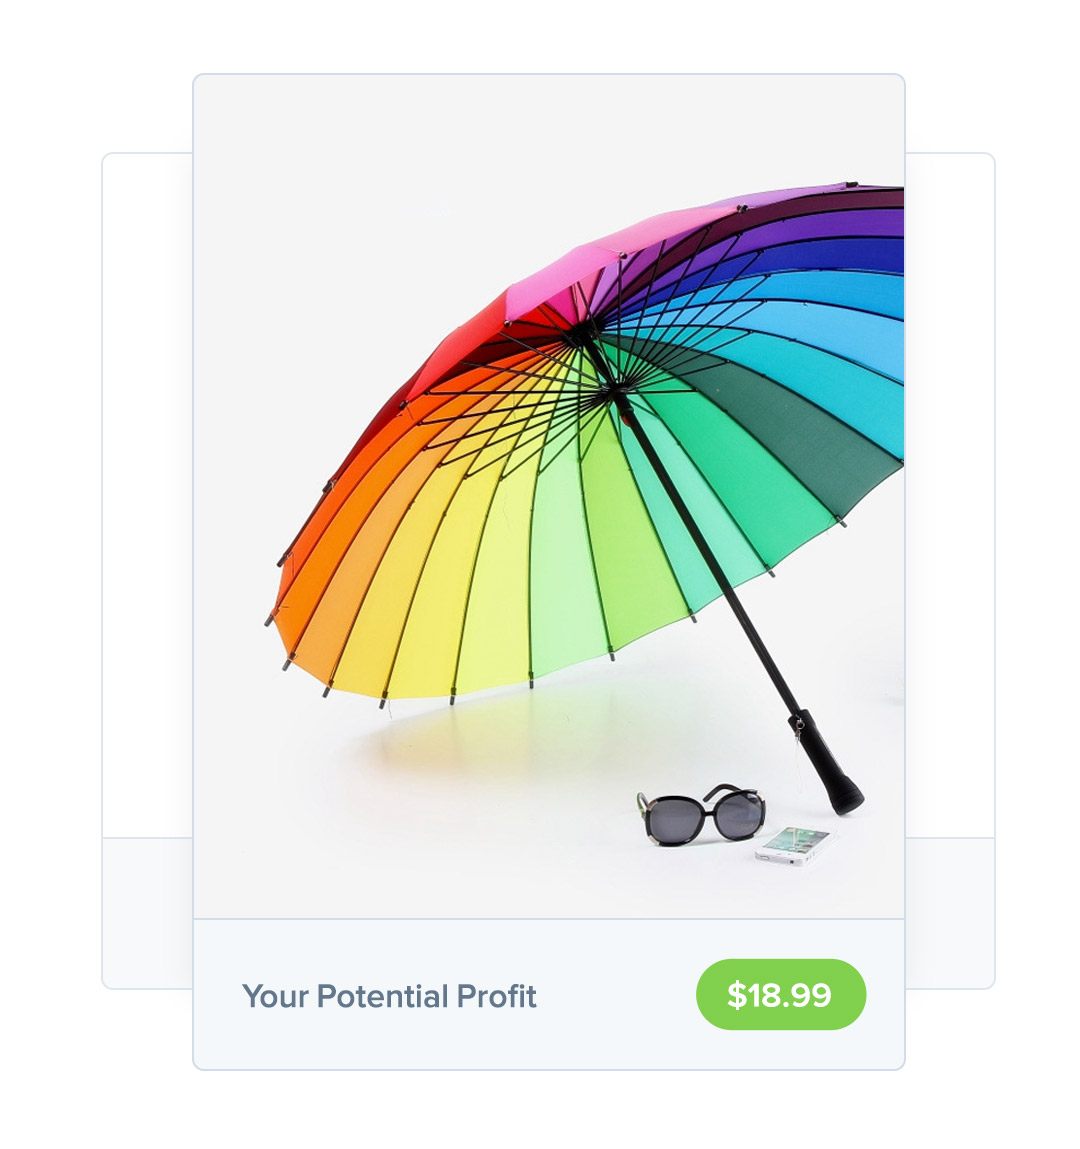 sell umbrellas online